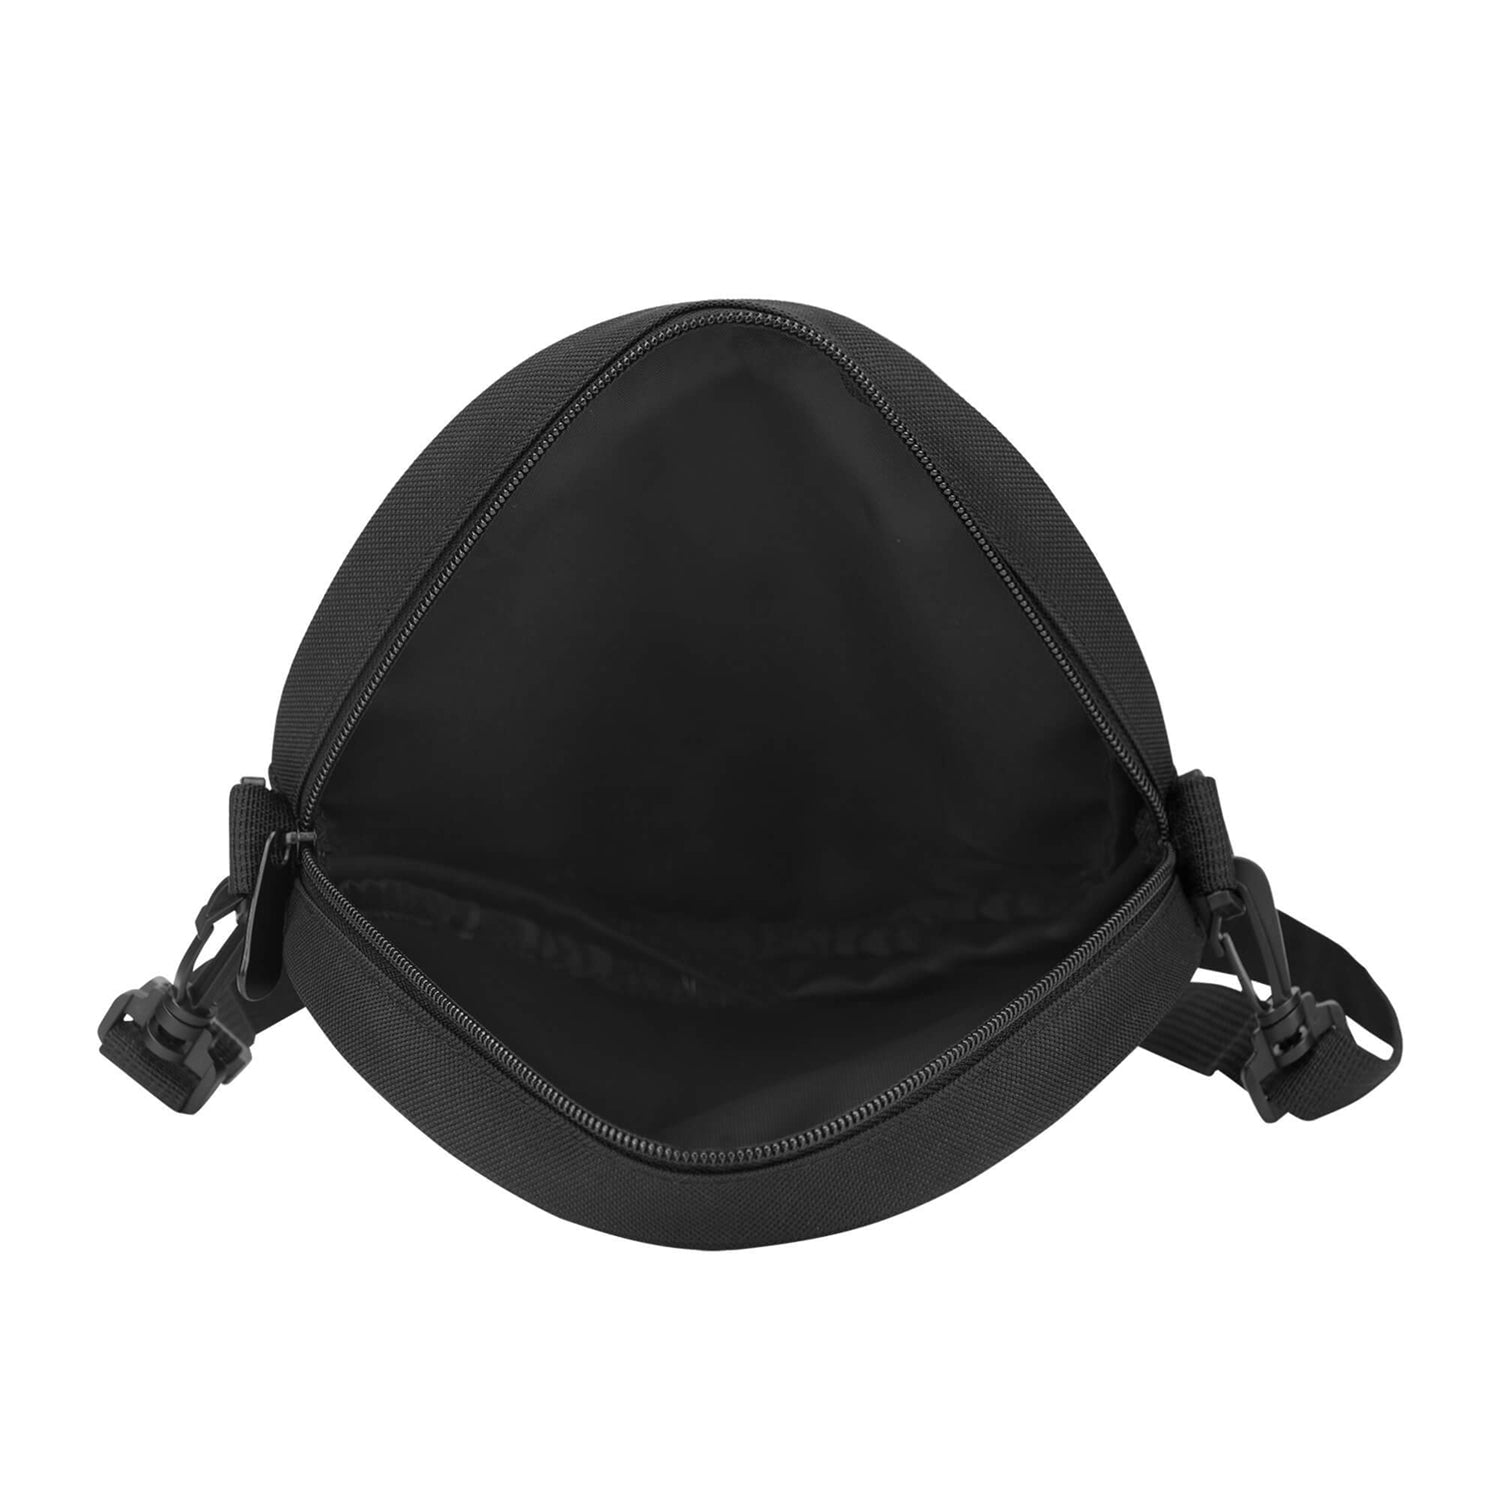 ruthven-modern-tartan-round-satchel-bags